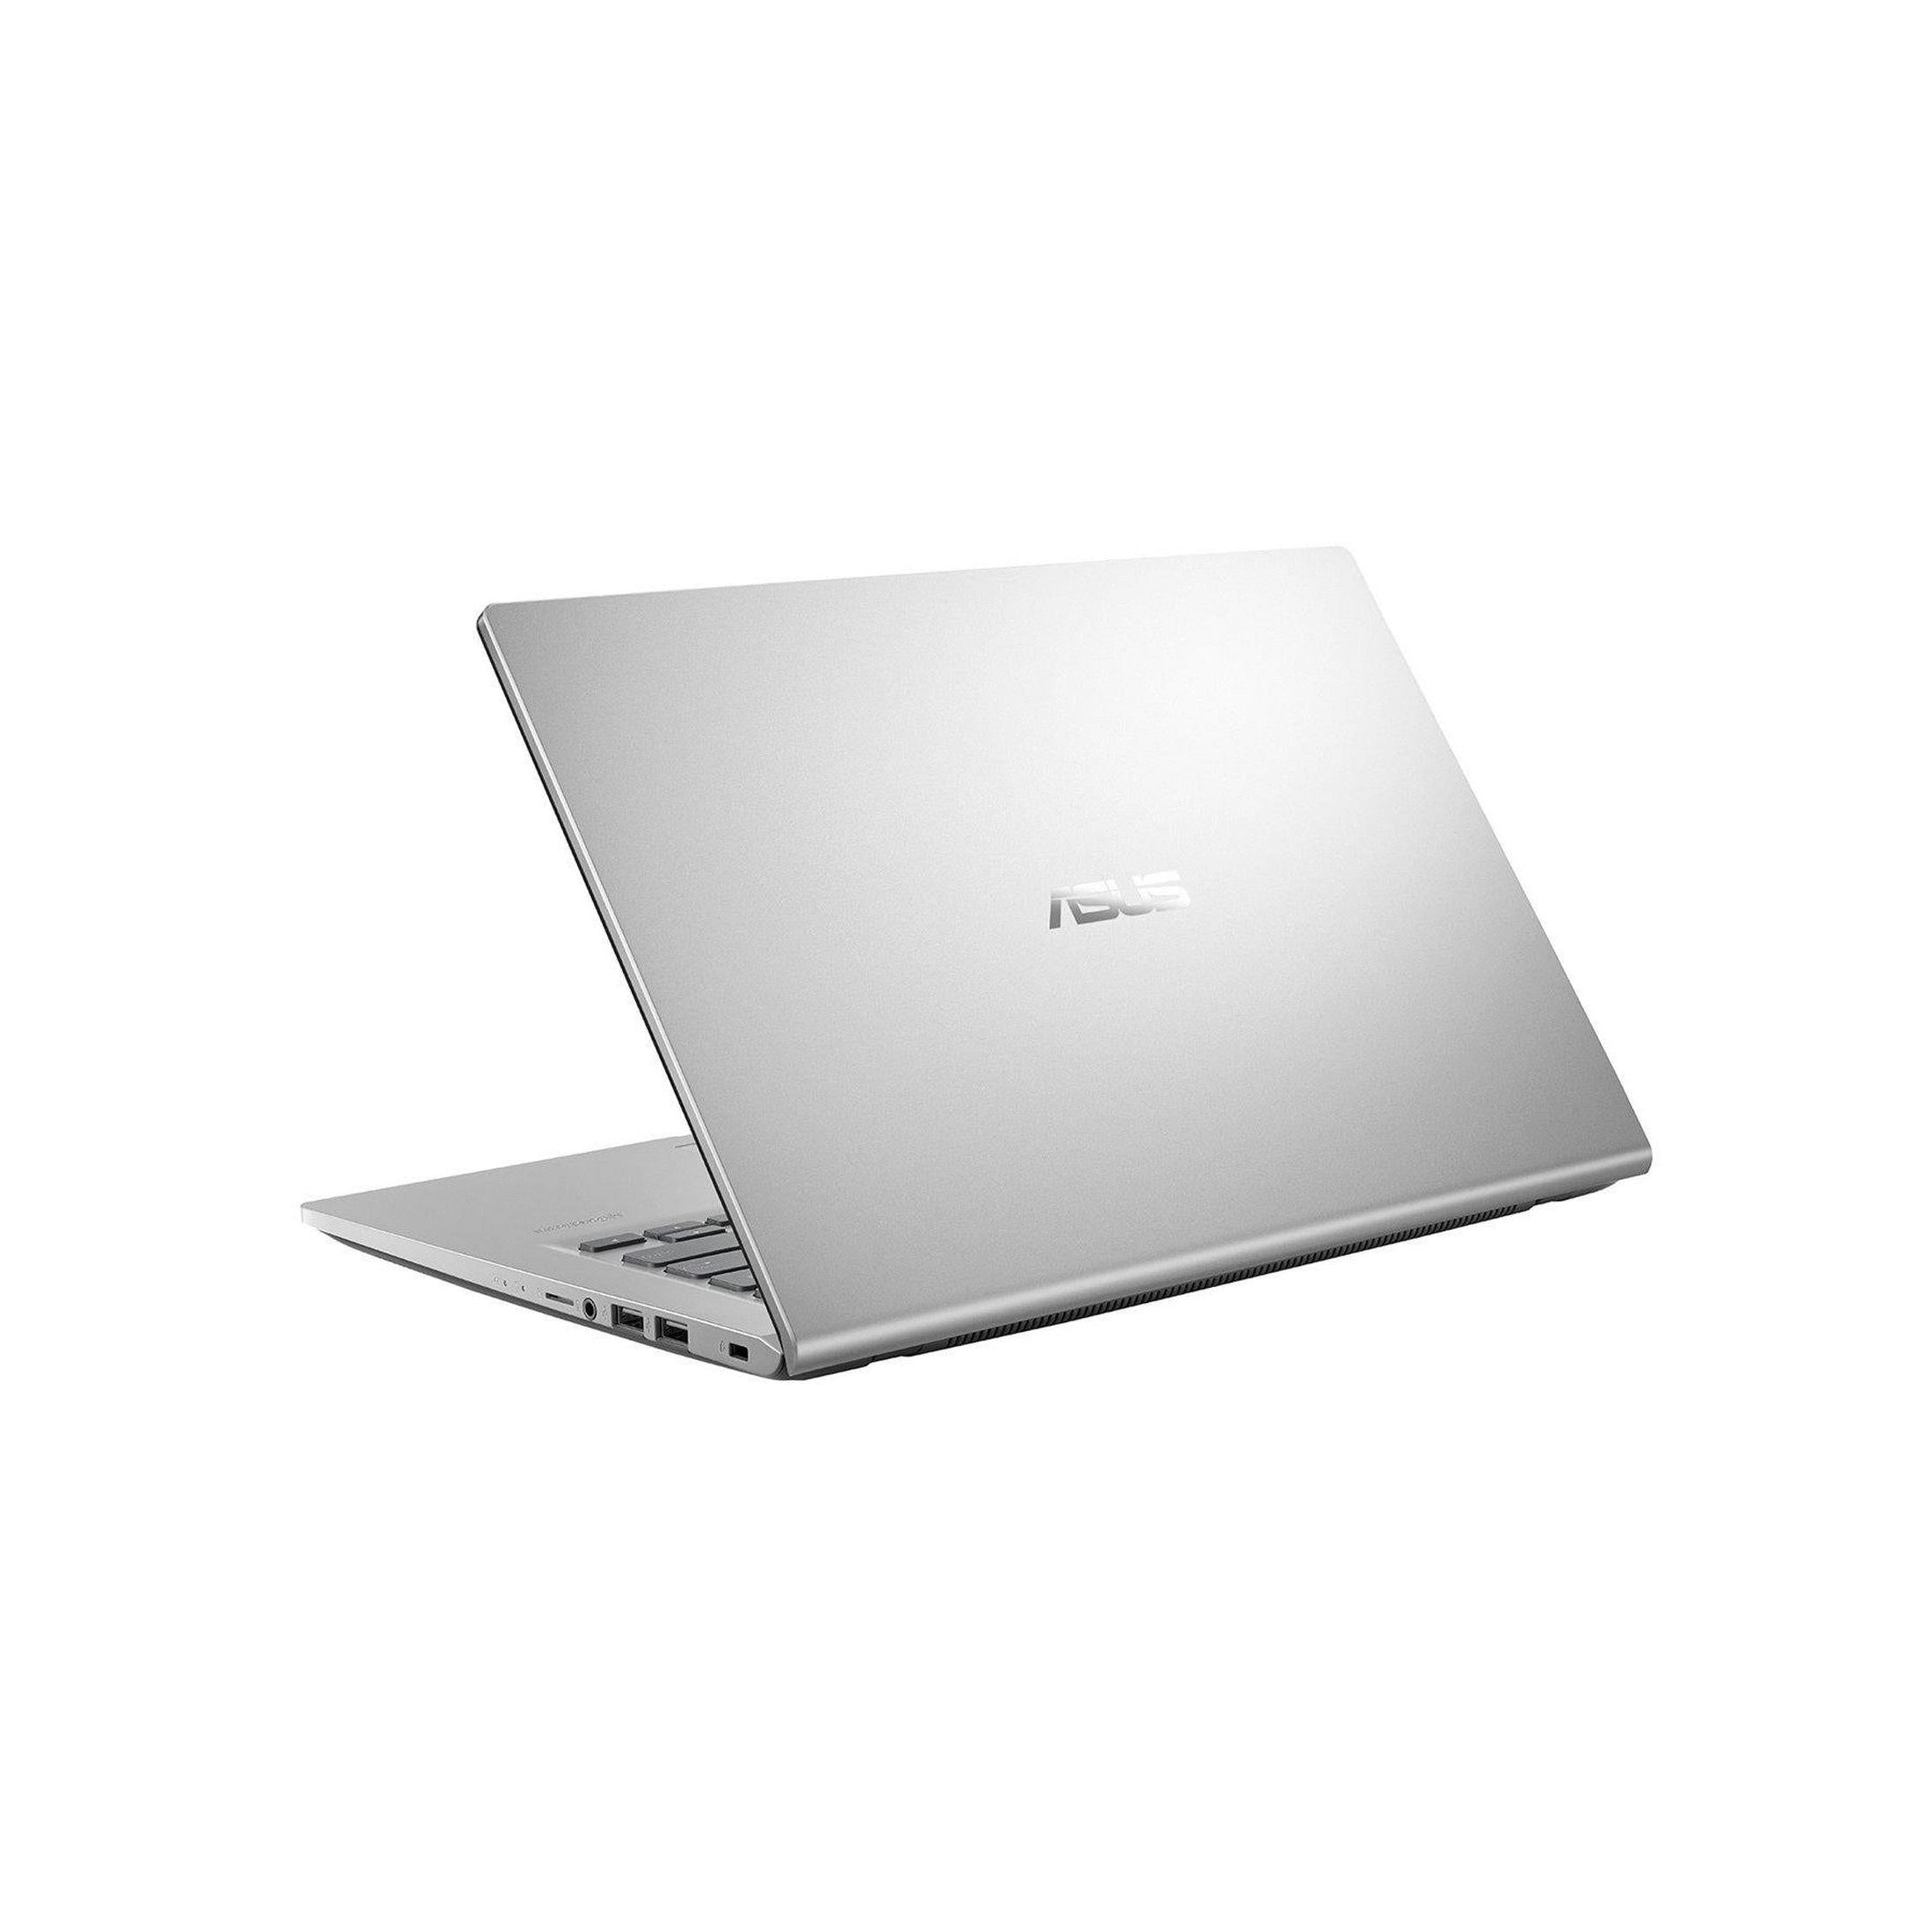 ASUS X415JA-EK031T 14" Laptop Intel Core i3-1005G1 8GB RAM 256GB SSD - Silver